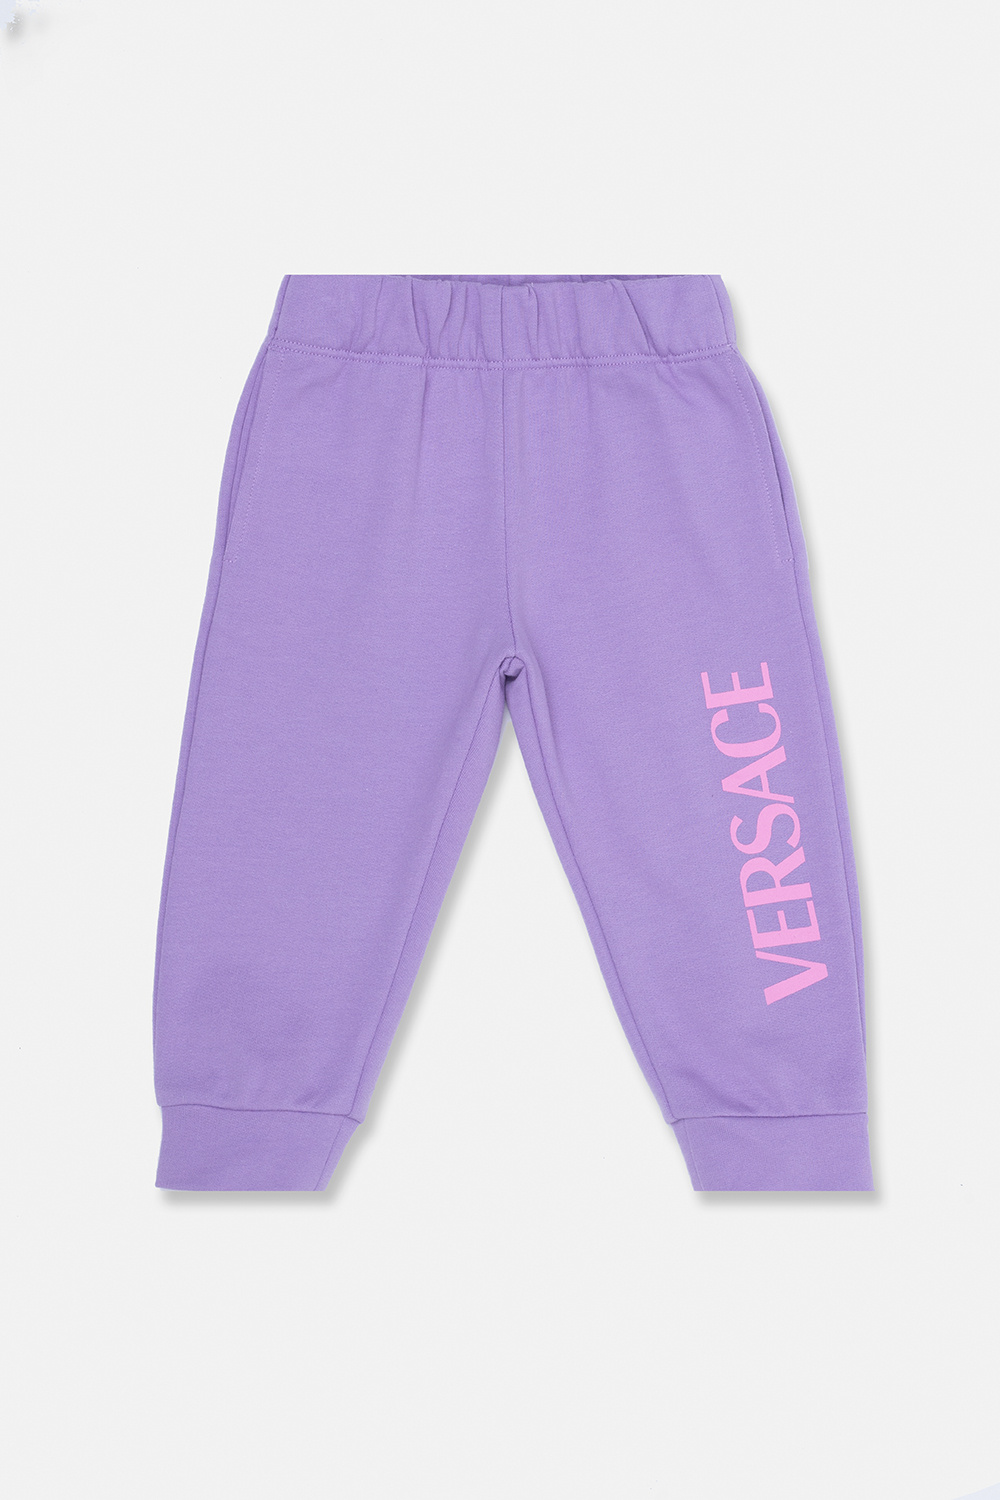 Versace Kids Indeholder en top og et par shorts